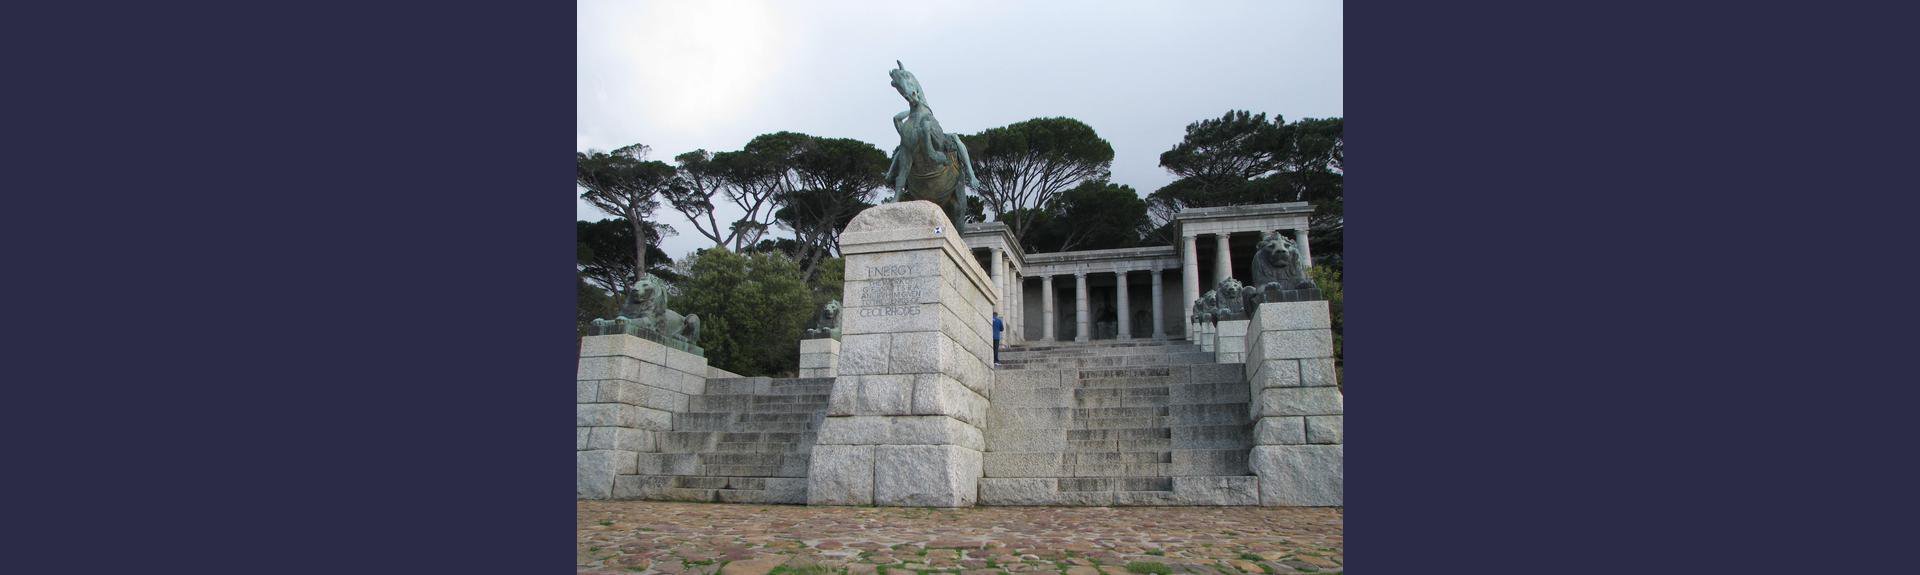 Rhodes Memorial - Cape Town